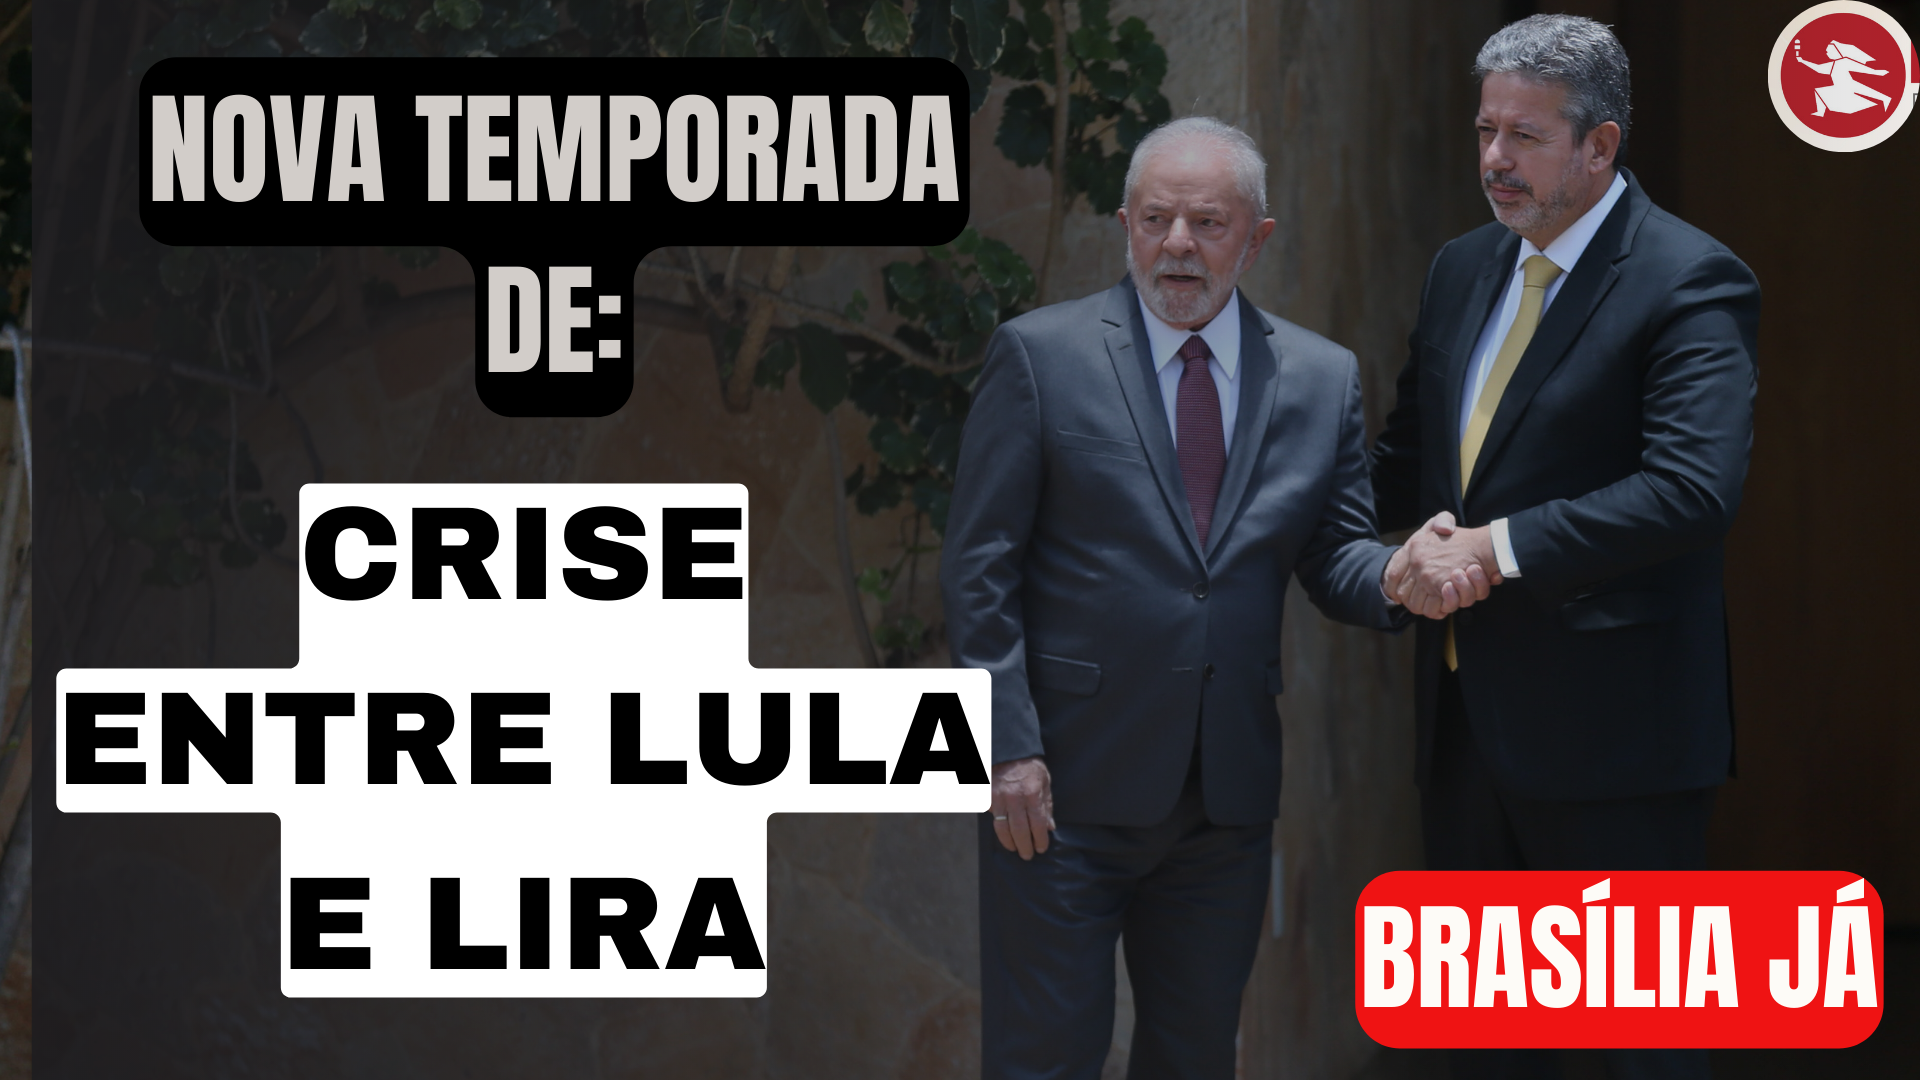 BRASÍLIA JÁ: “Crise” entre Lira e Lula. Começa a segunda temporada